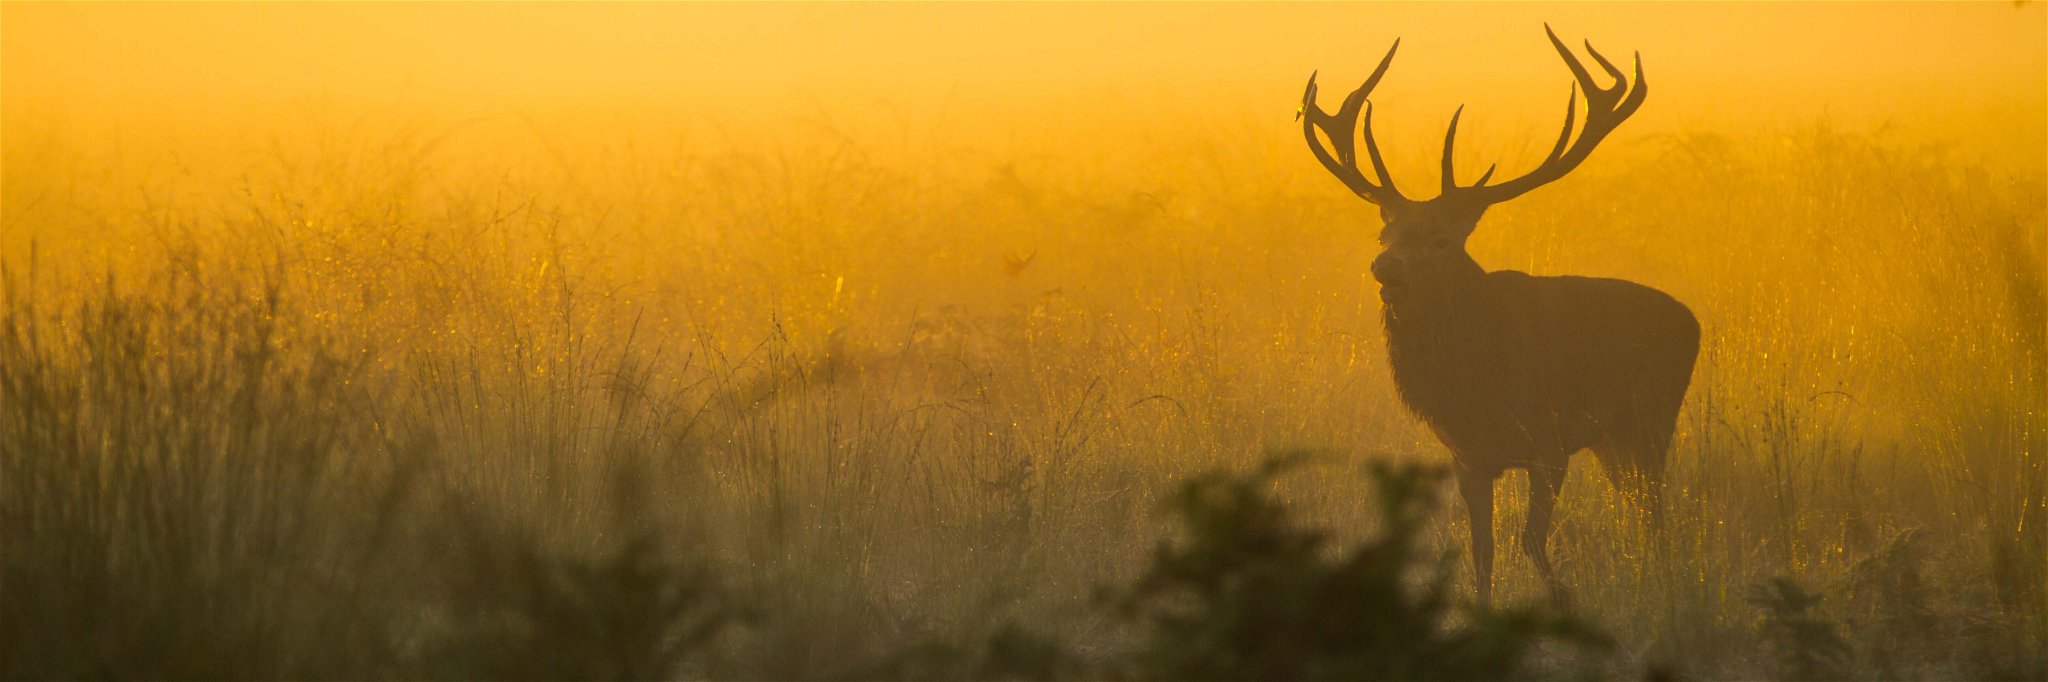 Die Jagd – eine nachhaltige Tradition.&nbsp;